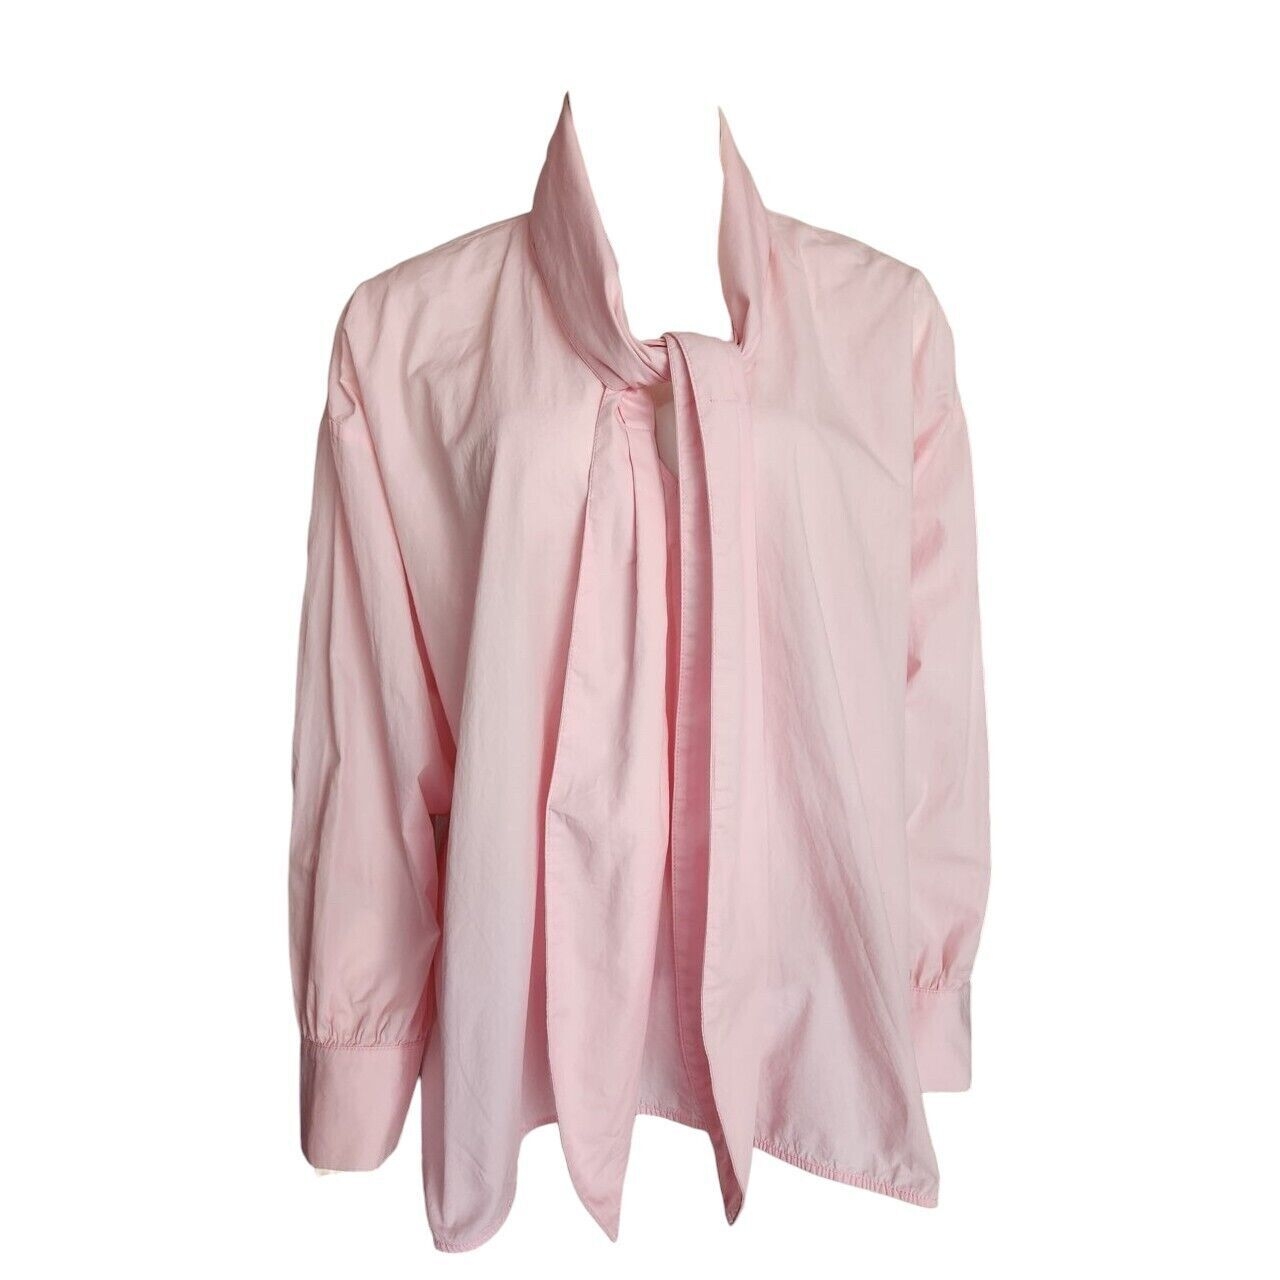 Zara Pink Pastel Blouse